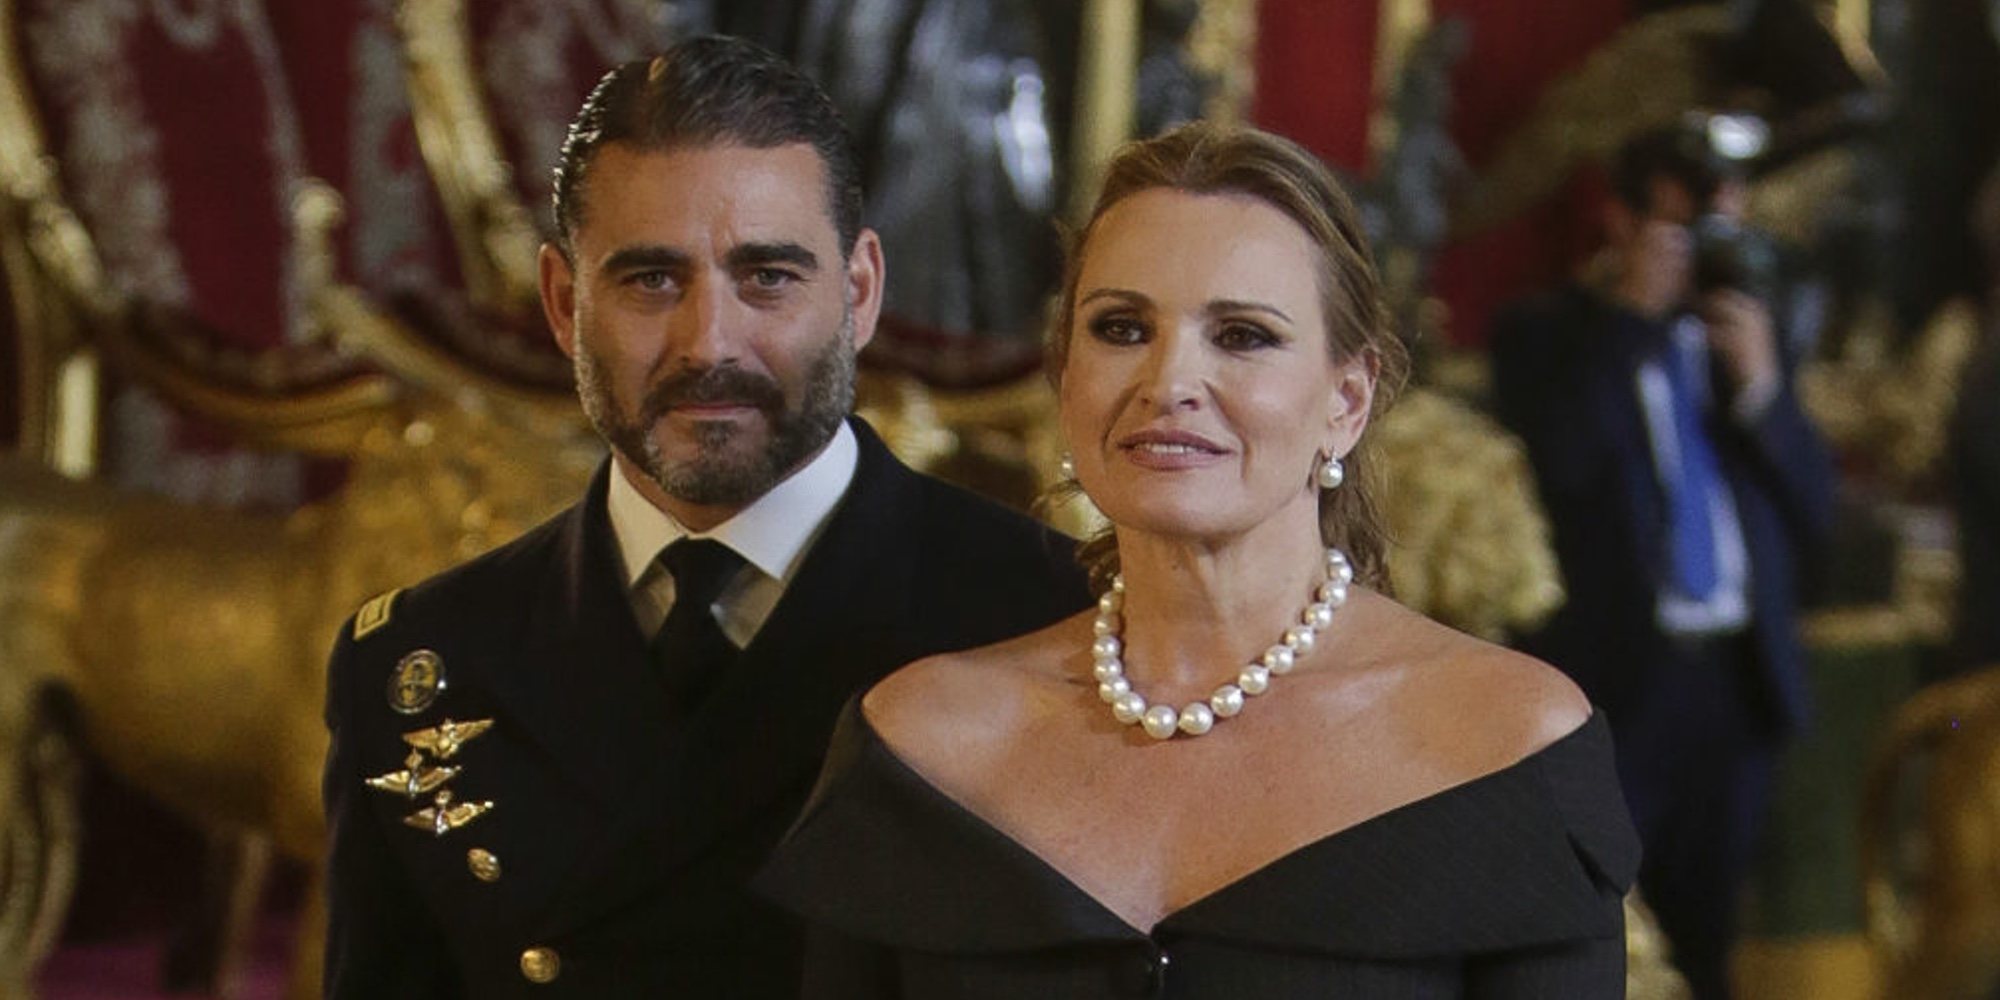 La soprano Ainhoa Arteta anuncia boda con su nuevo novio, el capitán de navío Matías Urrea